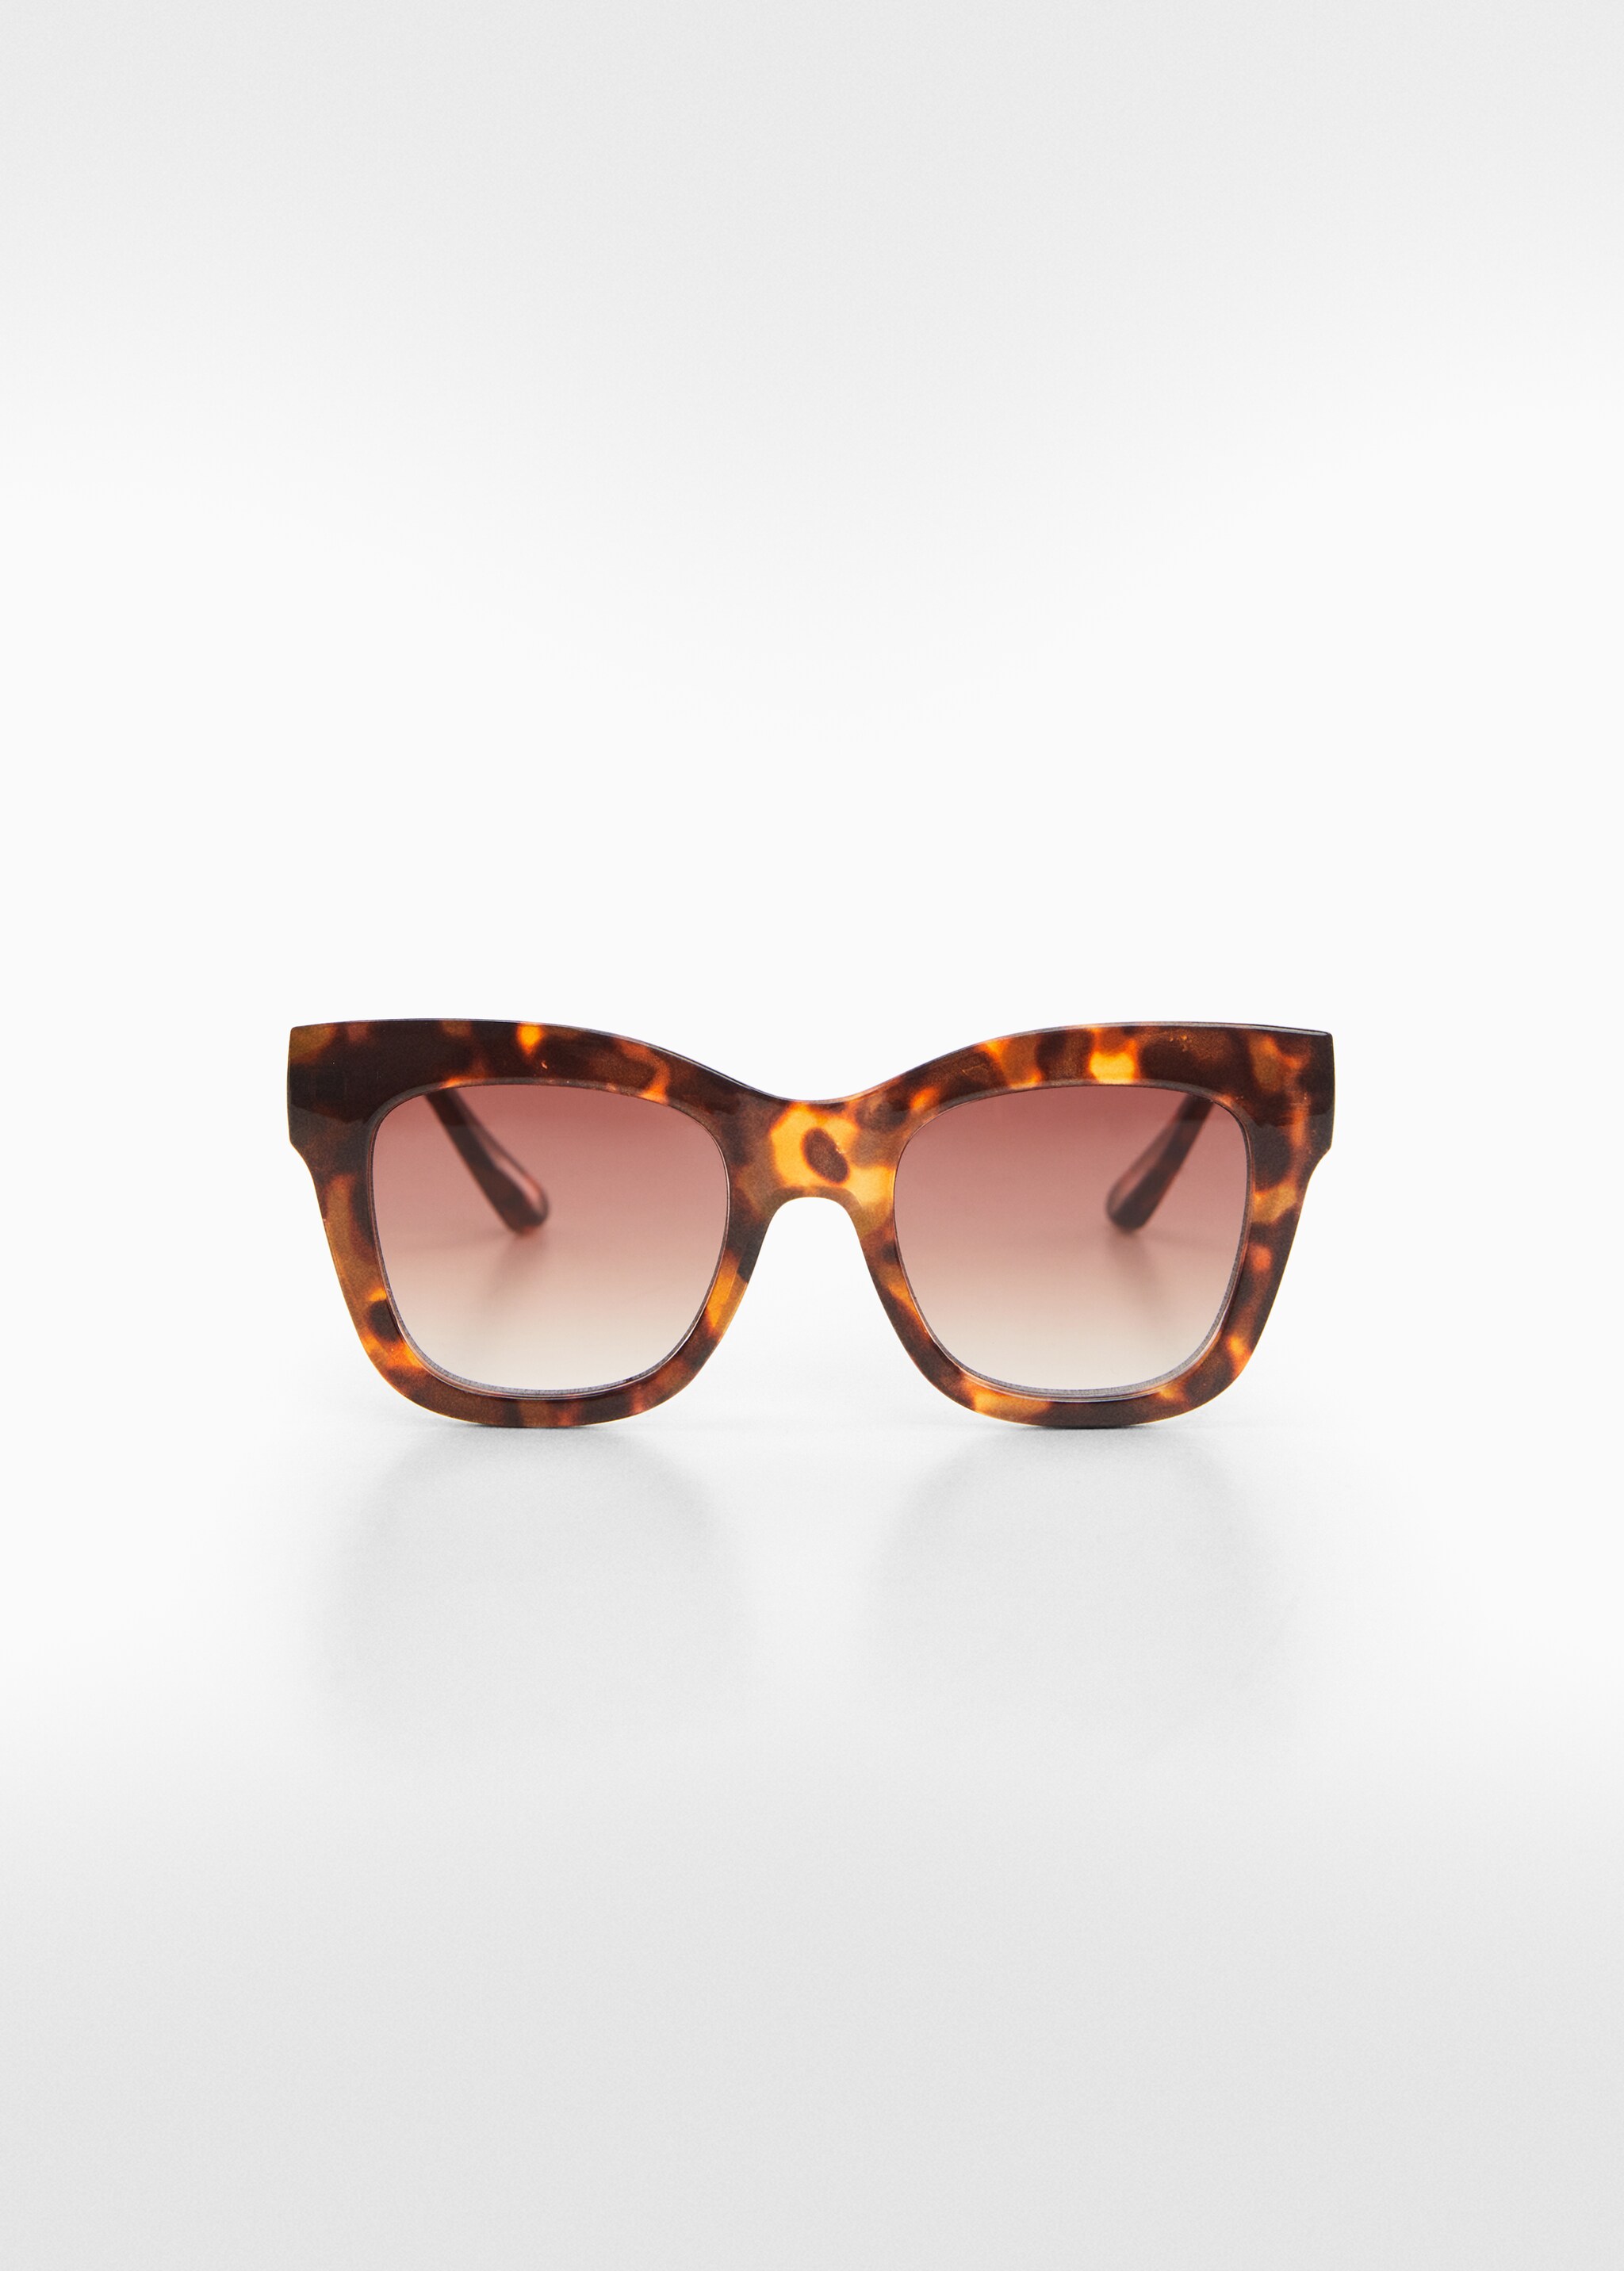 Sonnenbrille mit viereckiger Brillenfassung - Artikel ohne Model